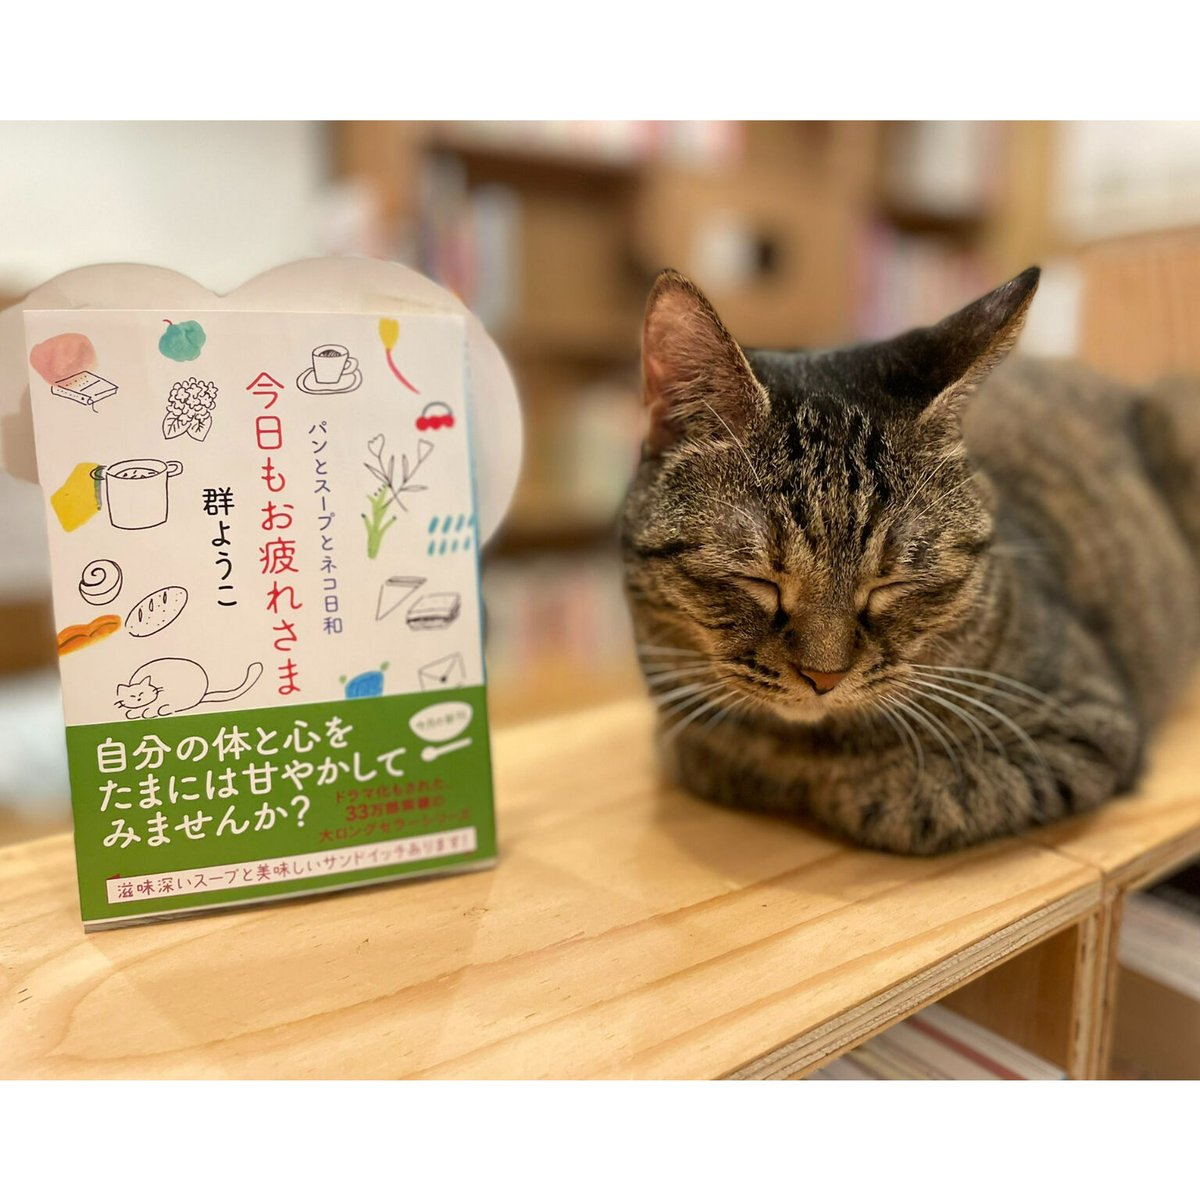 Books　Cat's　今日もお疲れさま　Meow　パンとスープとネコ日和　Virtual...